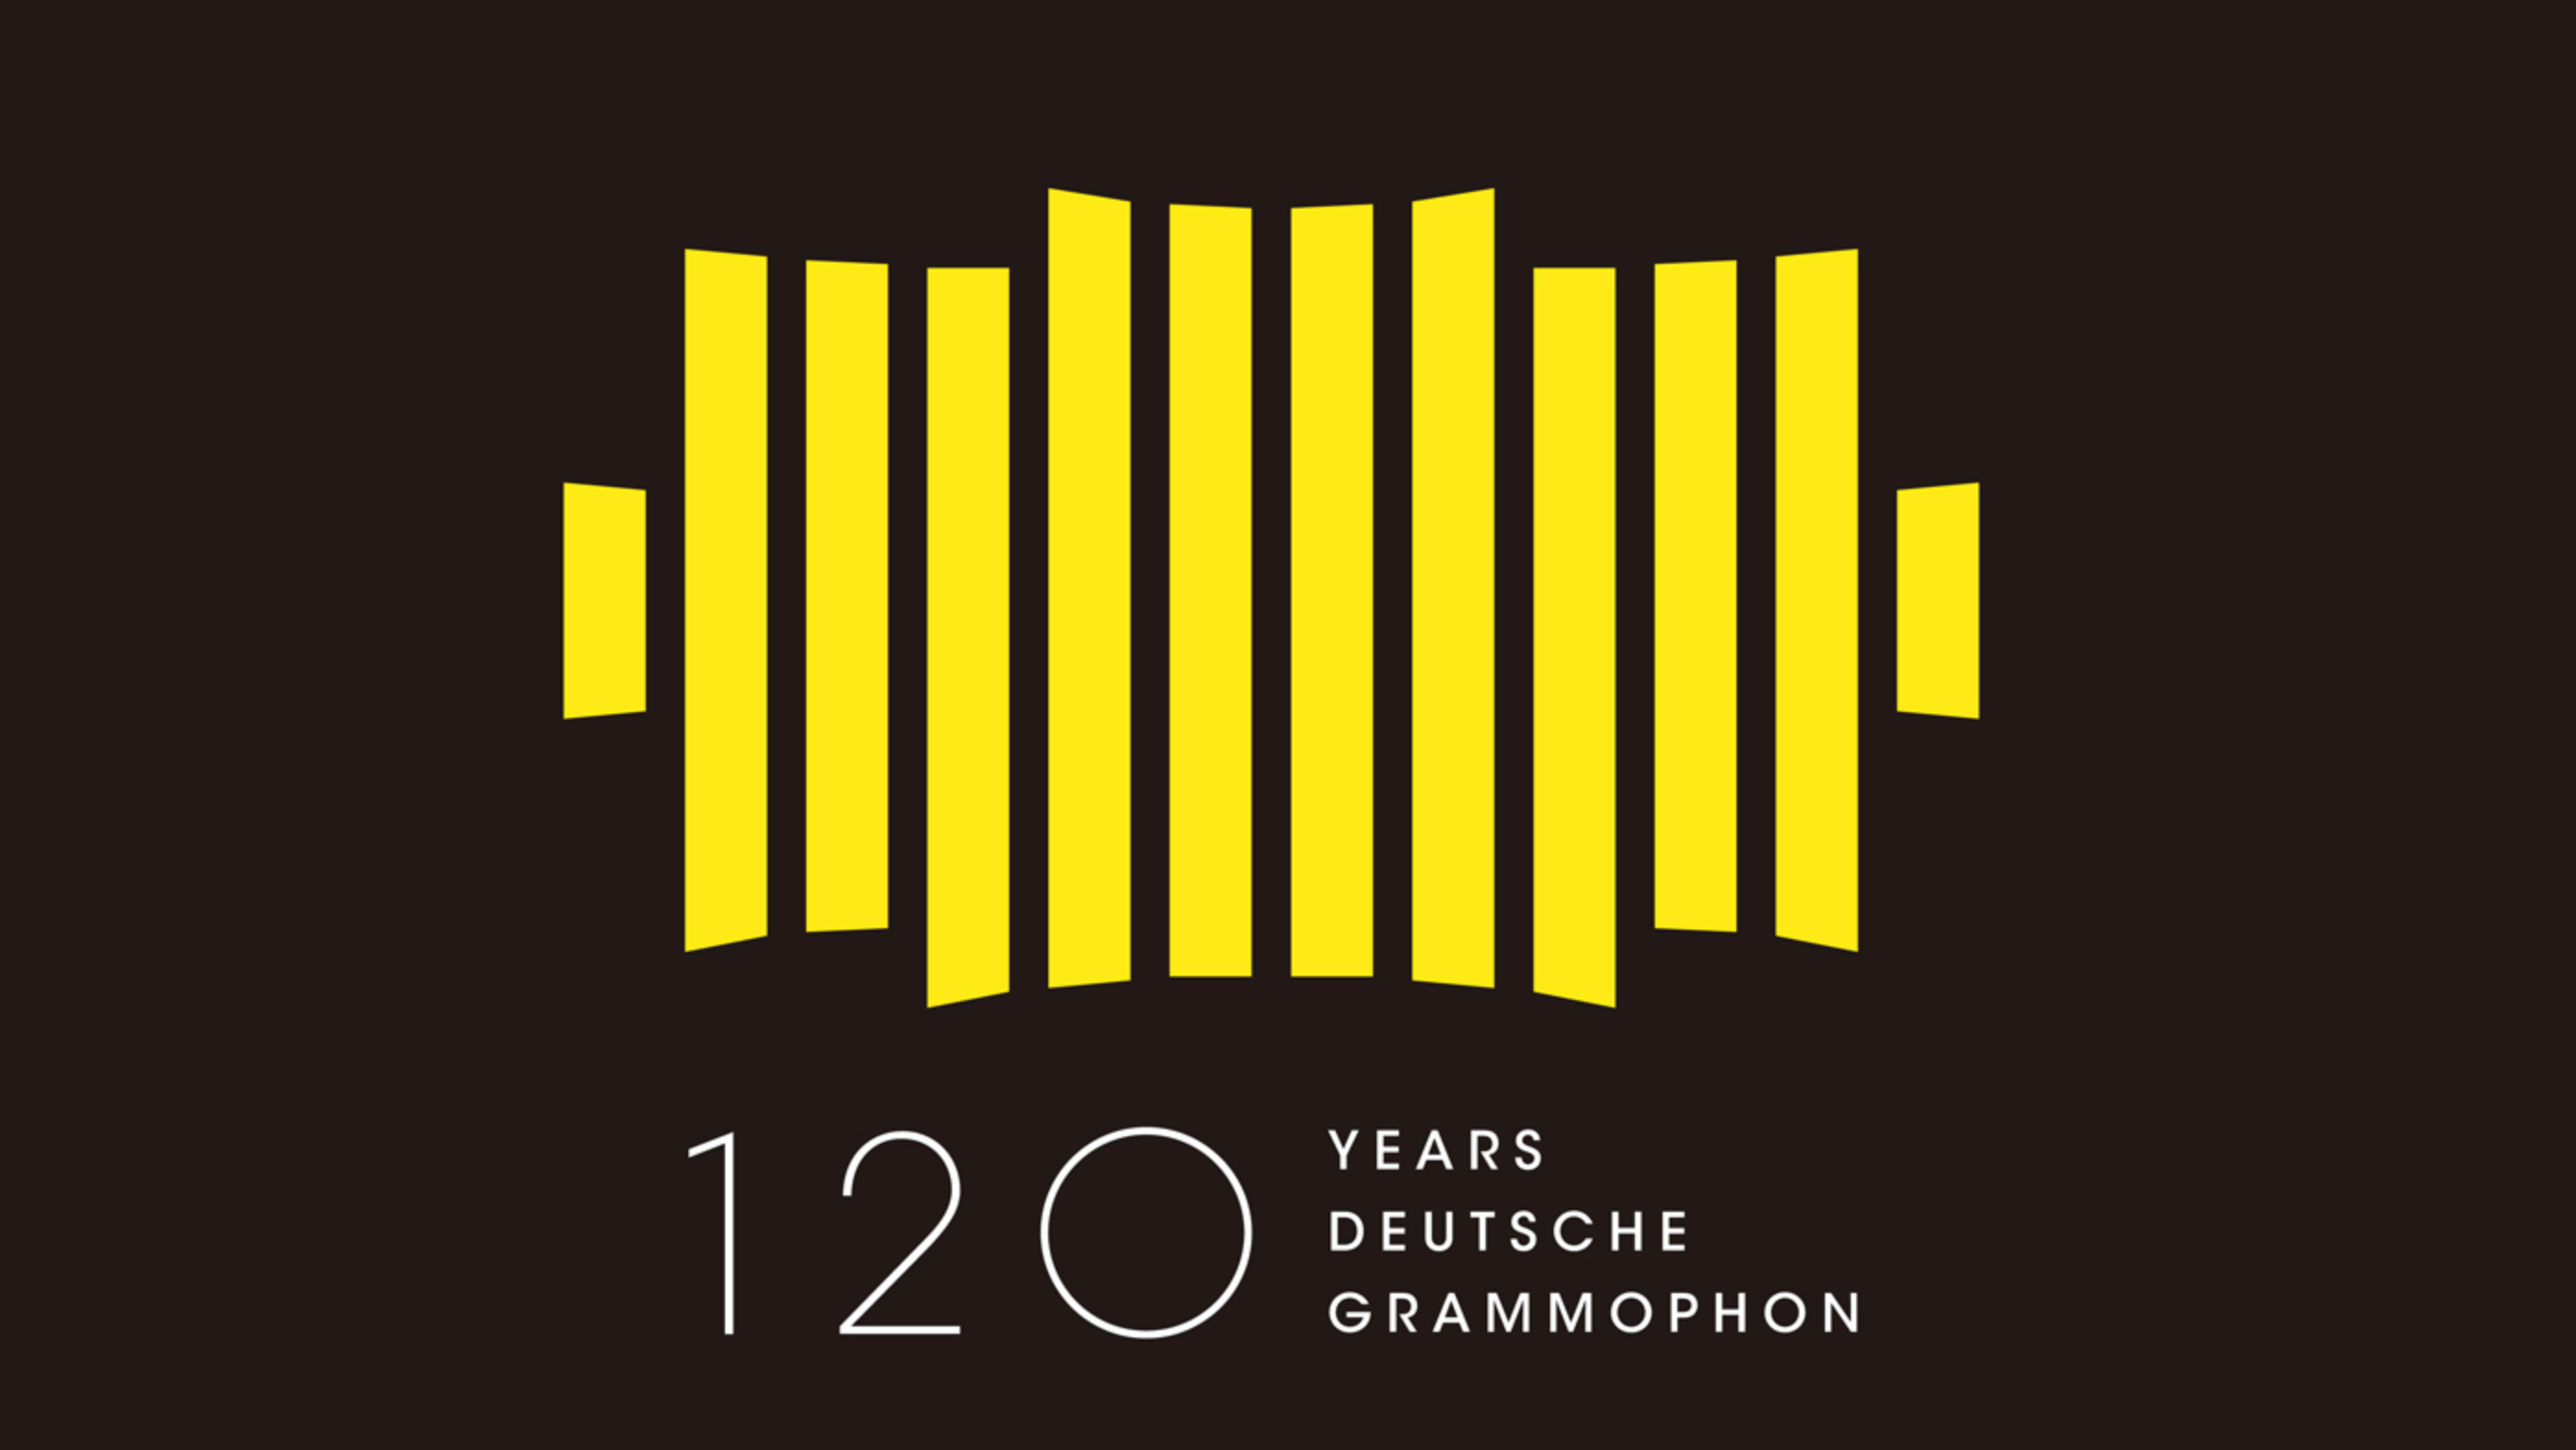 ドイツ･グラモフォン創立120周年記念 